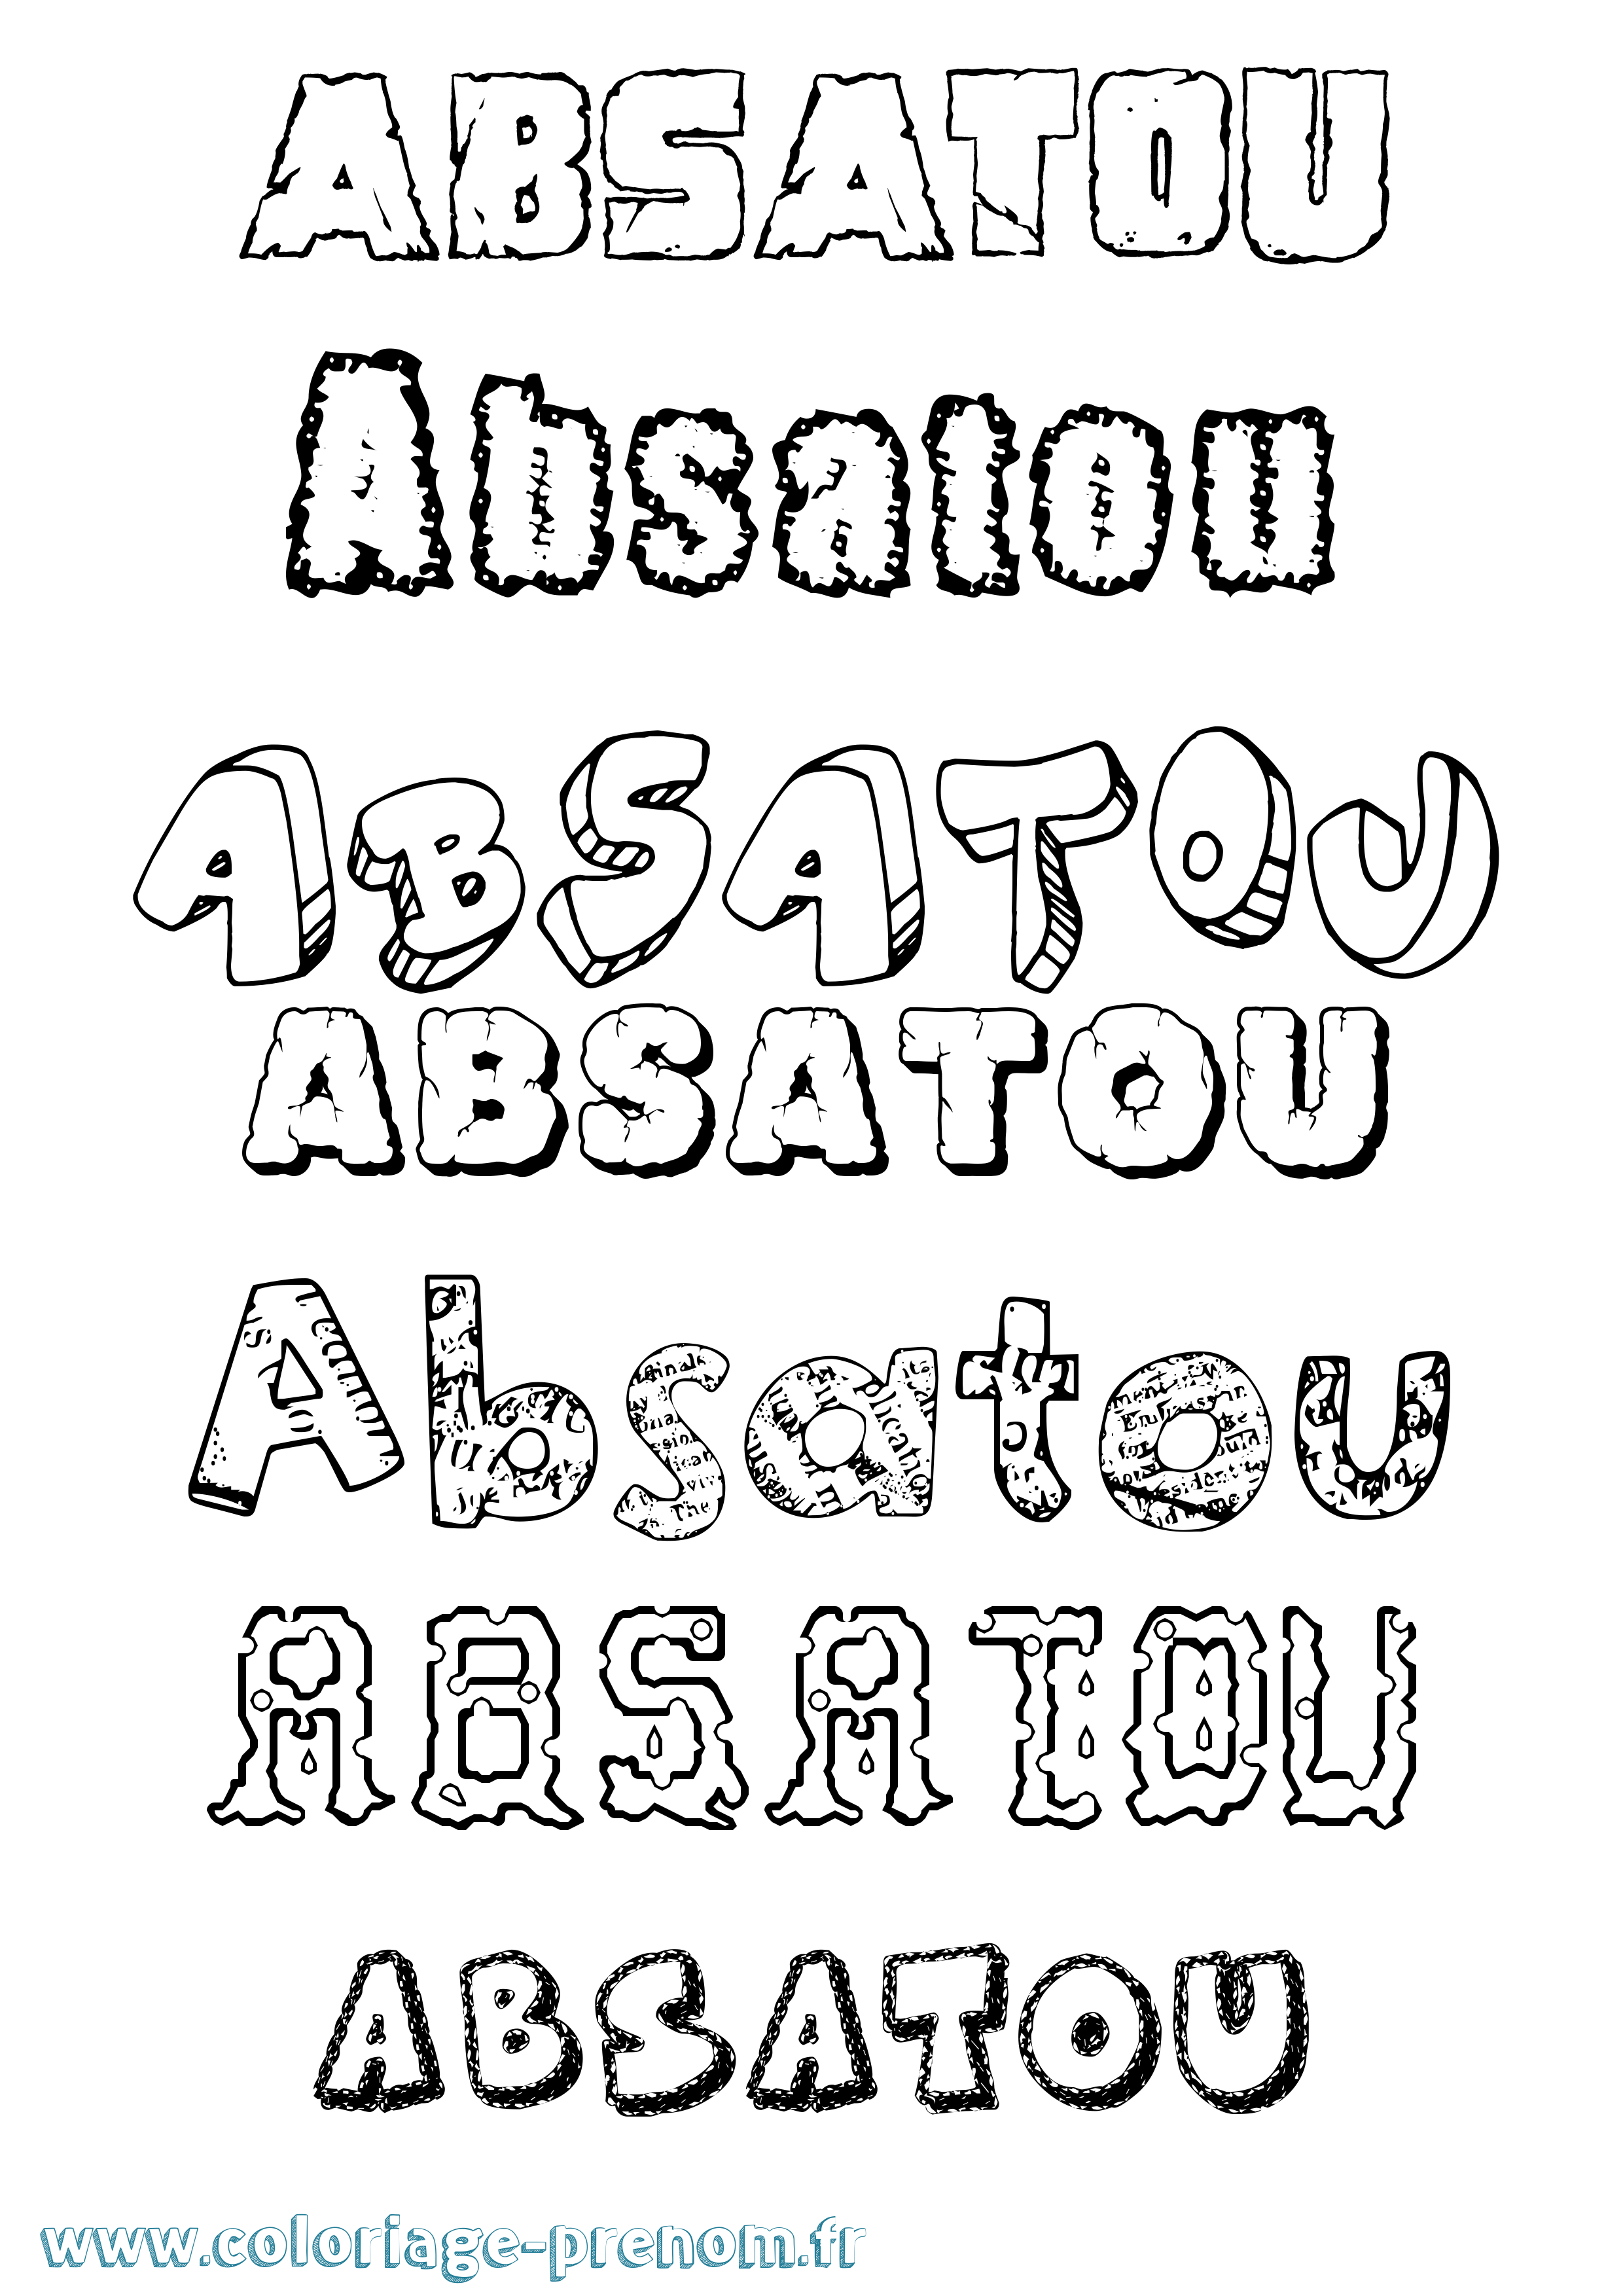 Coloriage prénom Absatou Destructuré